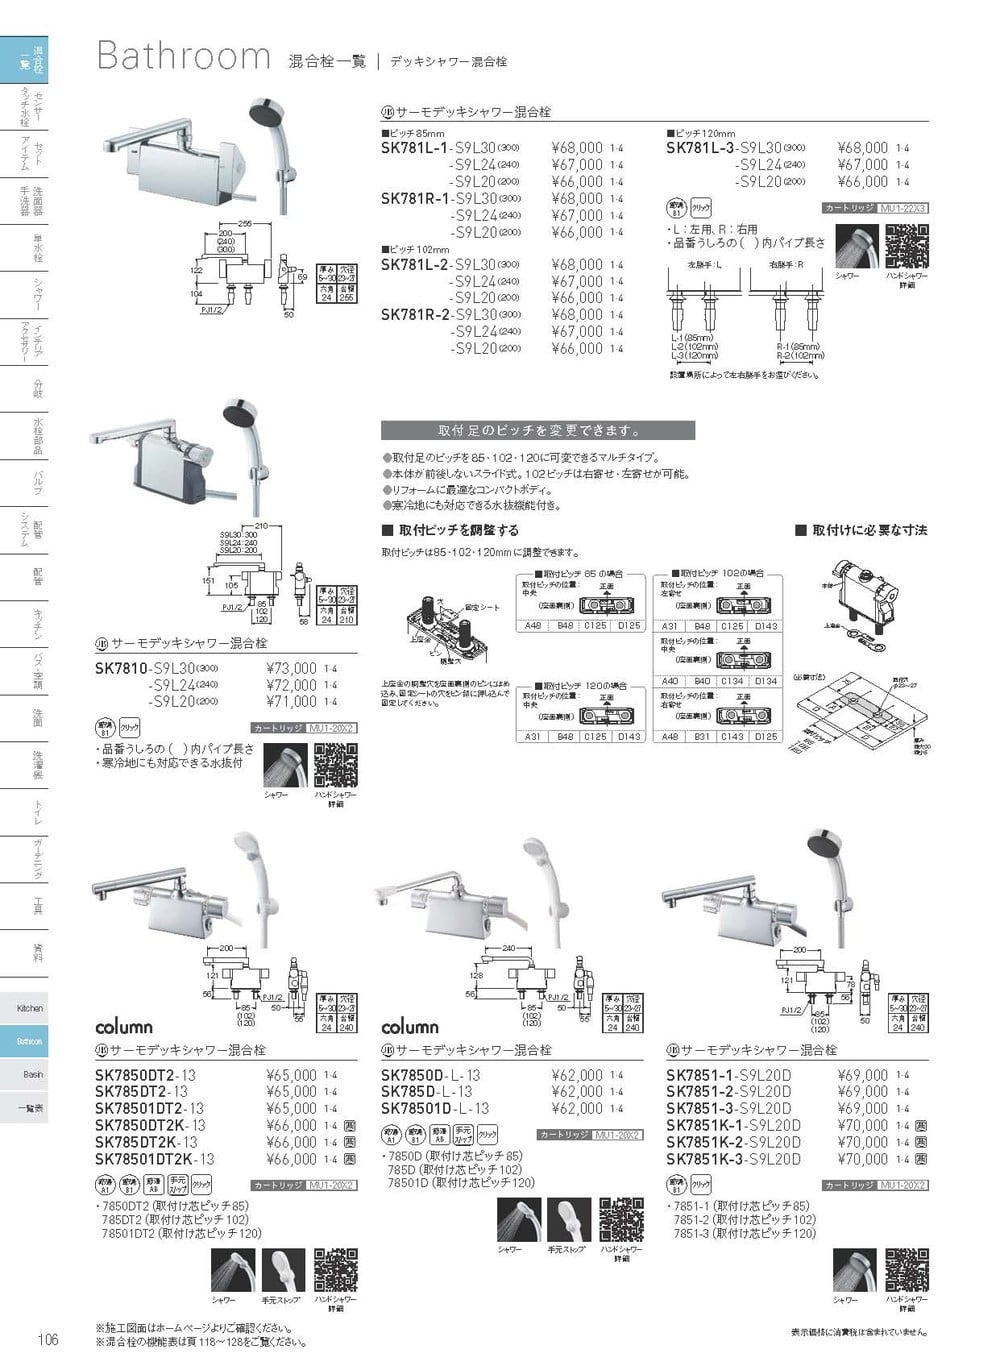 三栄水栓 SK7851K-1-S9L20D サーモデッキシャワー混合栓 SANEI - 住宅設備